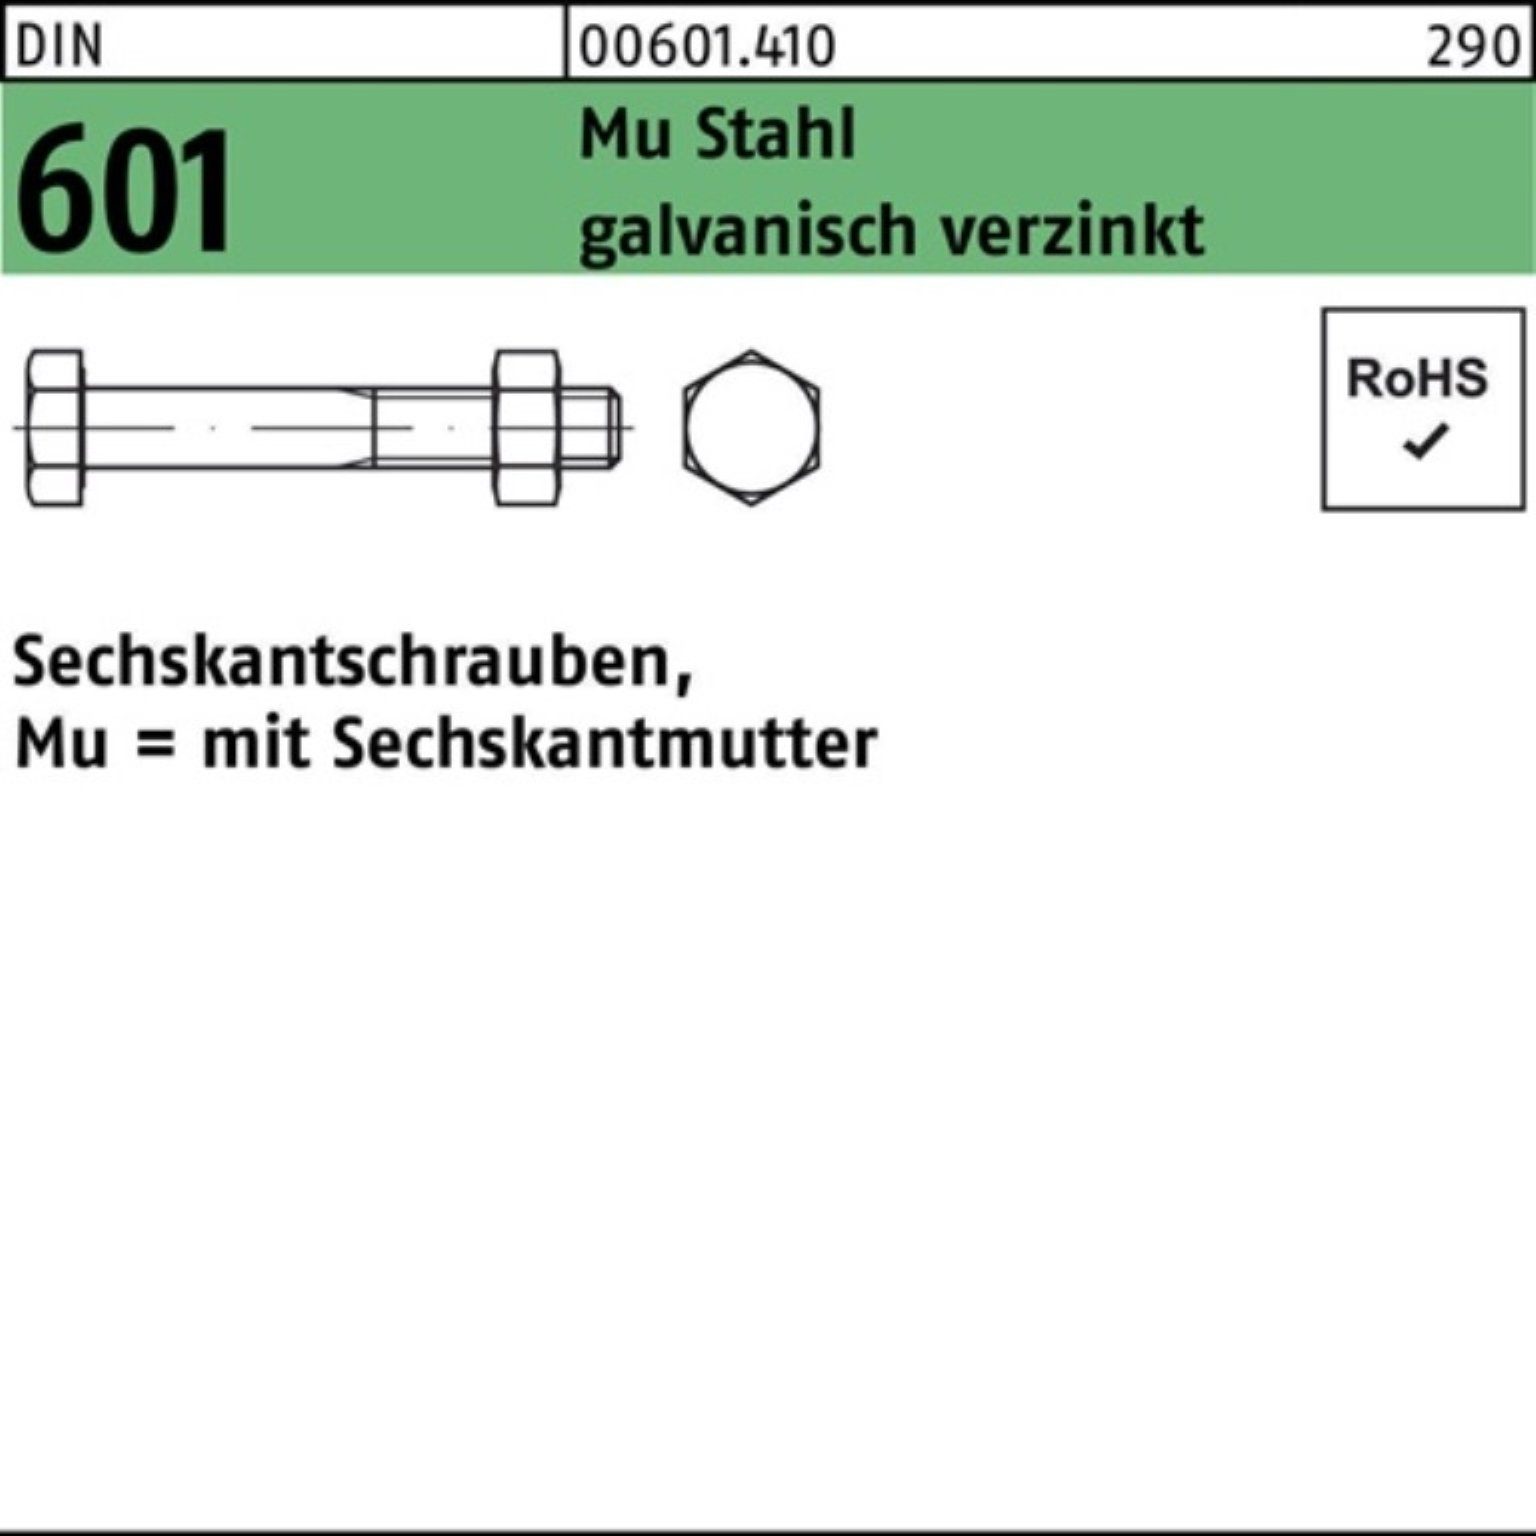 Reyher Sechskantmutter 200er Pack Sechskantschraube DIN 601 Sechskantmutter M8x20 Mu Stahl 4.